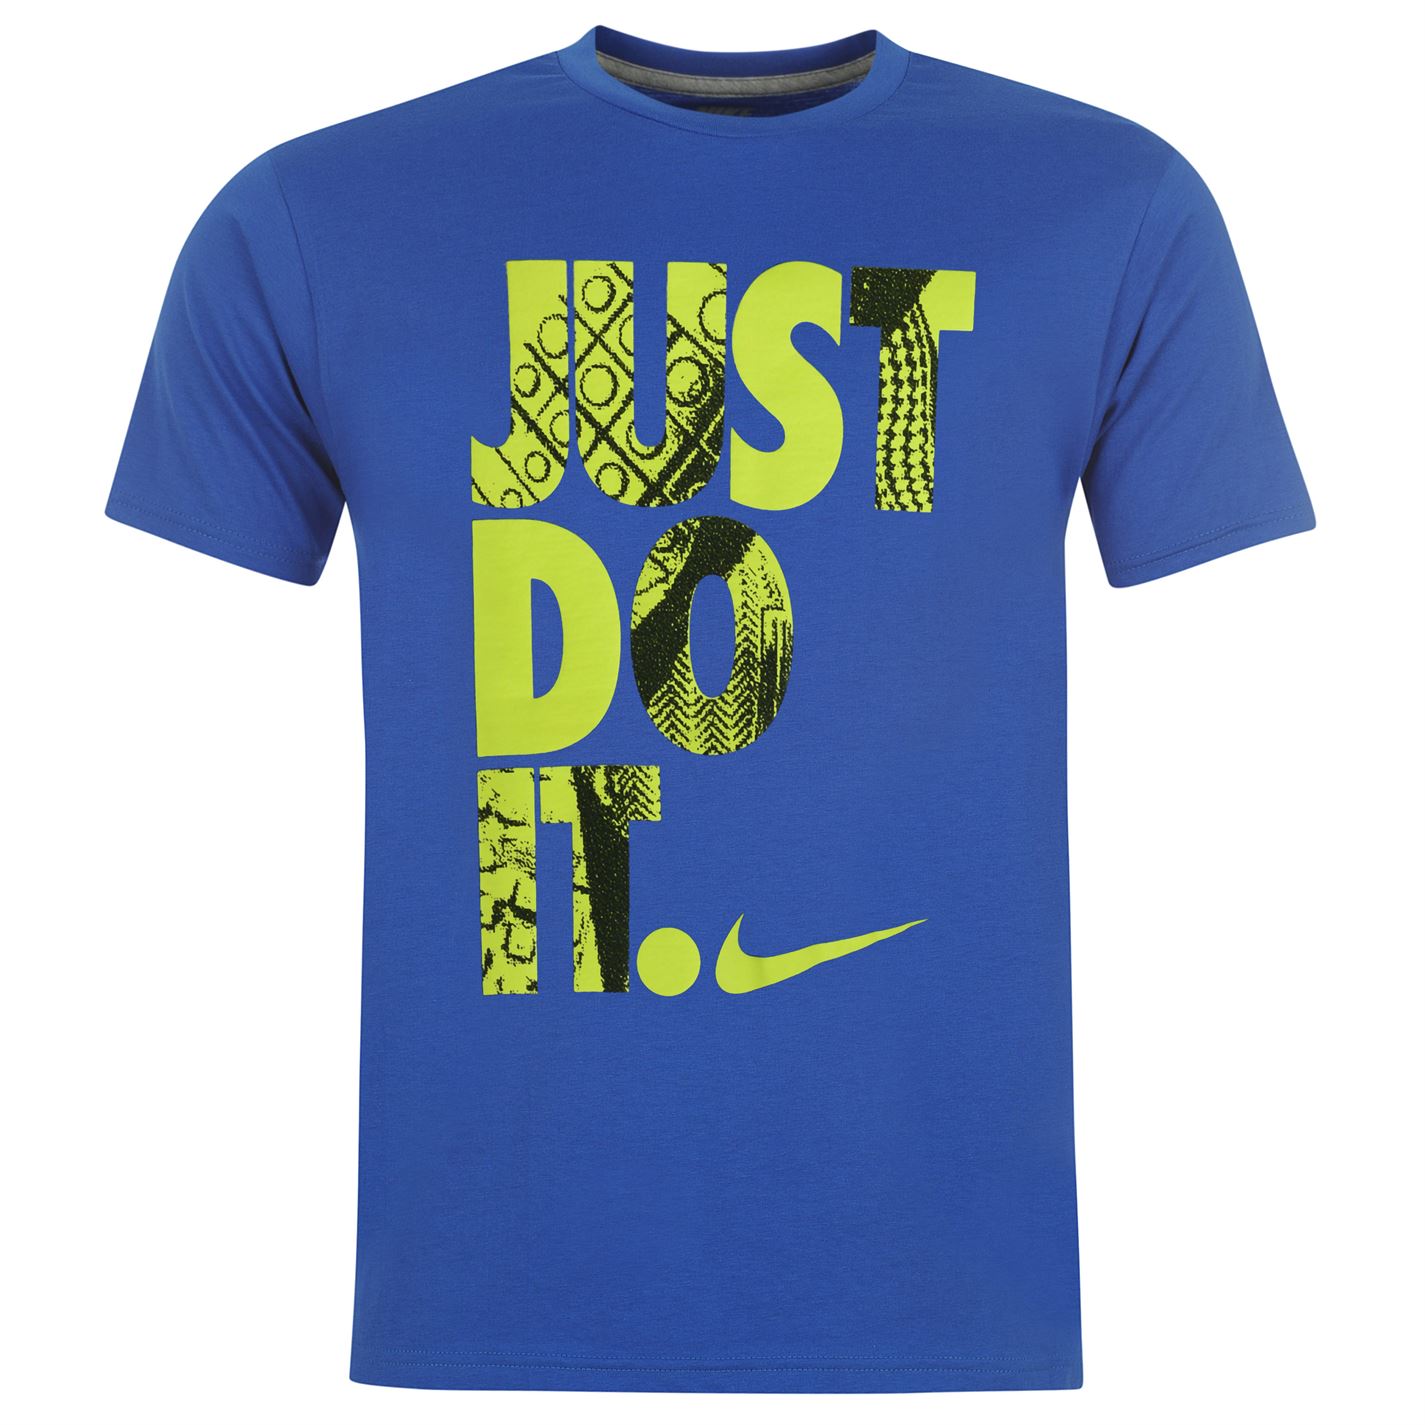 Nike Herren T-Shirt Just Do It Shirt S M L XL 2XL XXL Swoosh Tee ...